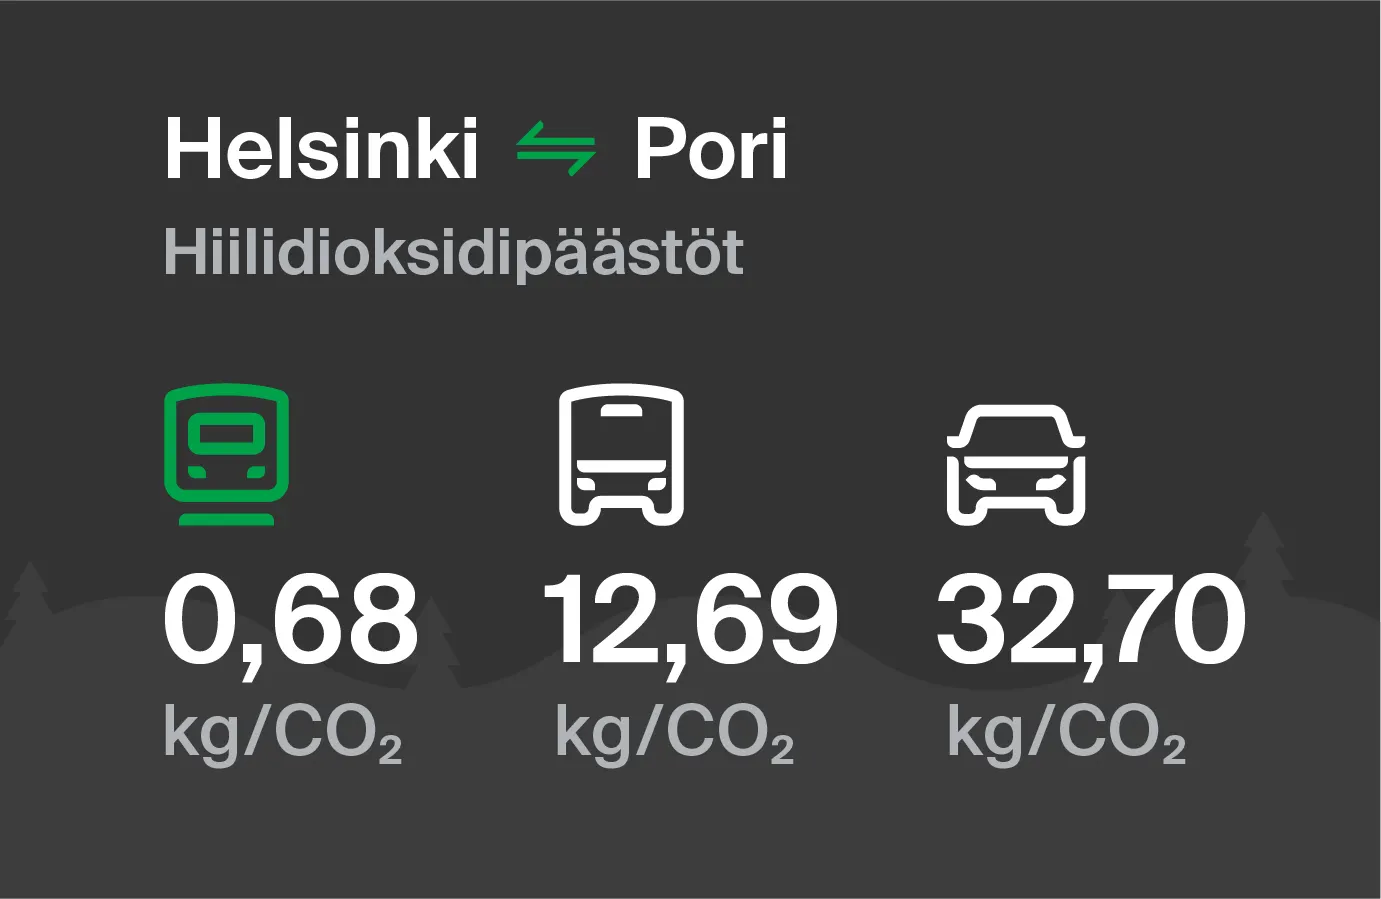 Hiilidioksidipäästöt Helsingistä Poriin eri kulkuvälinemuodoilla: junalla 0,68 kg/CO2, bussilla 12,69 kg/CO2 ja autolla 32,70 kg/CO2.